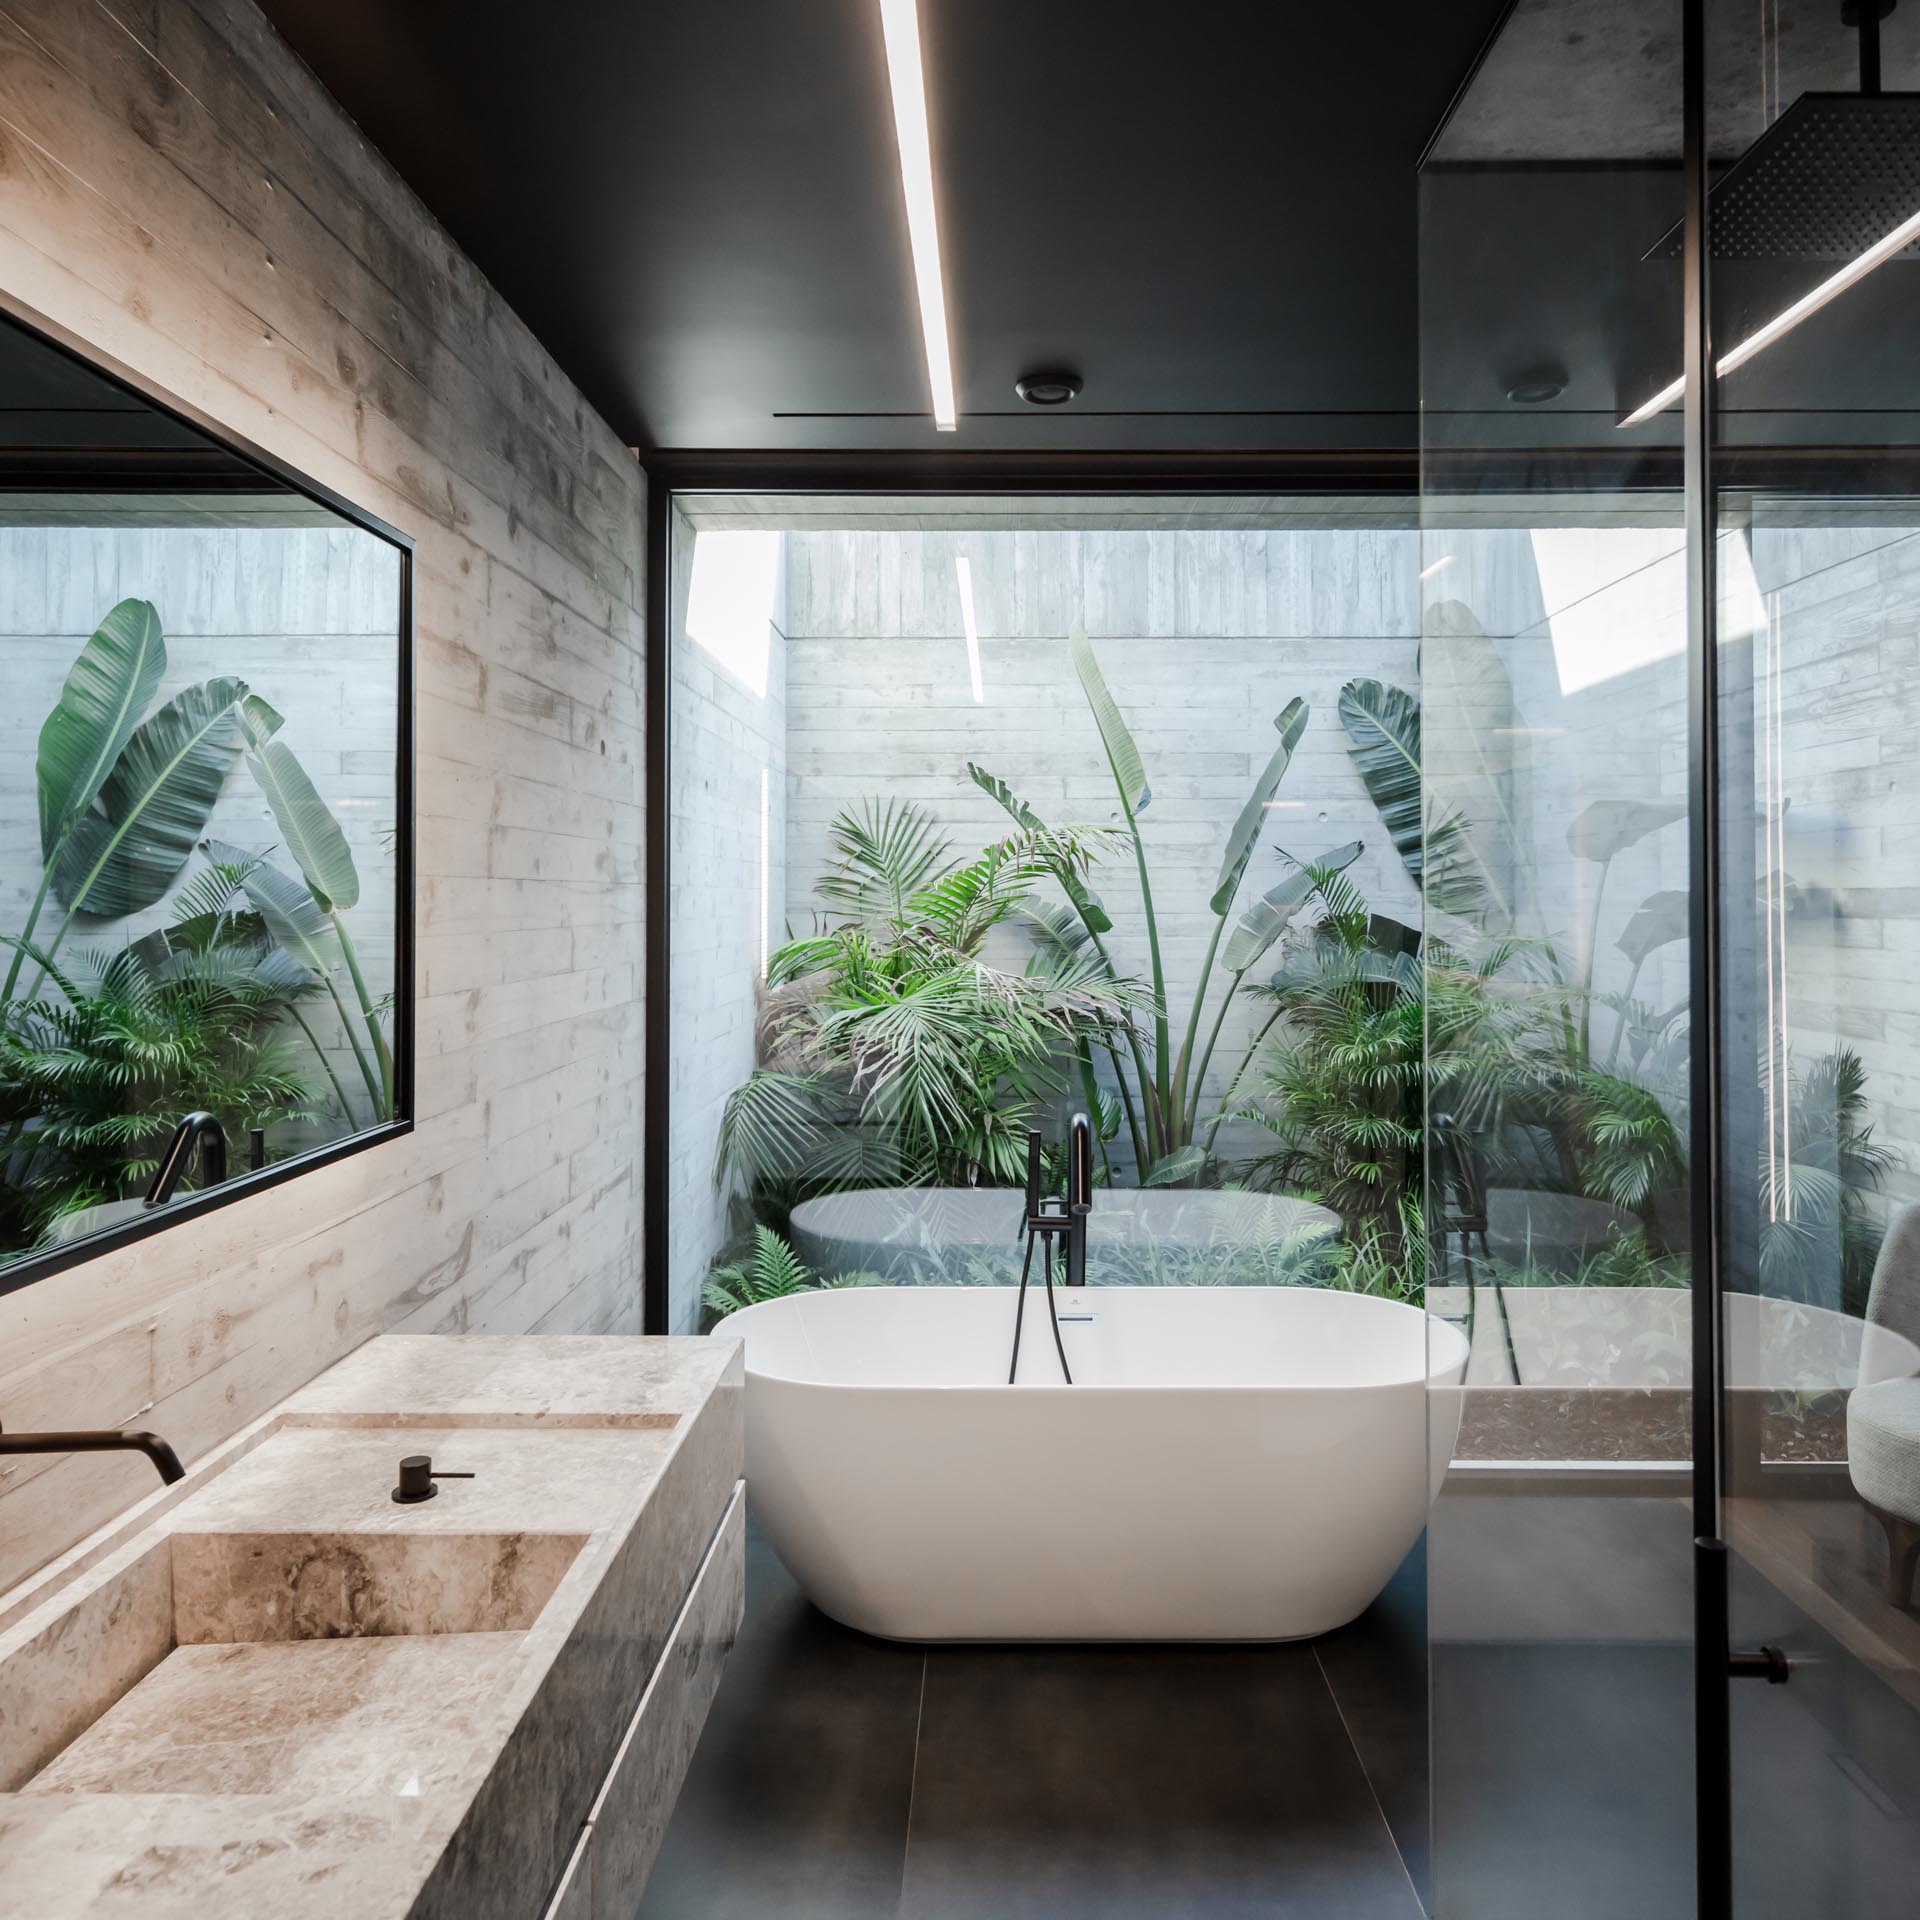 В этой современной ванной комнате за отдельно стоящей ванной есть стеклянная стена, через которую открывается вид на тропический сад.